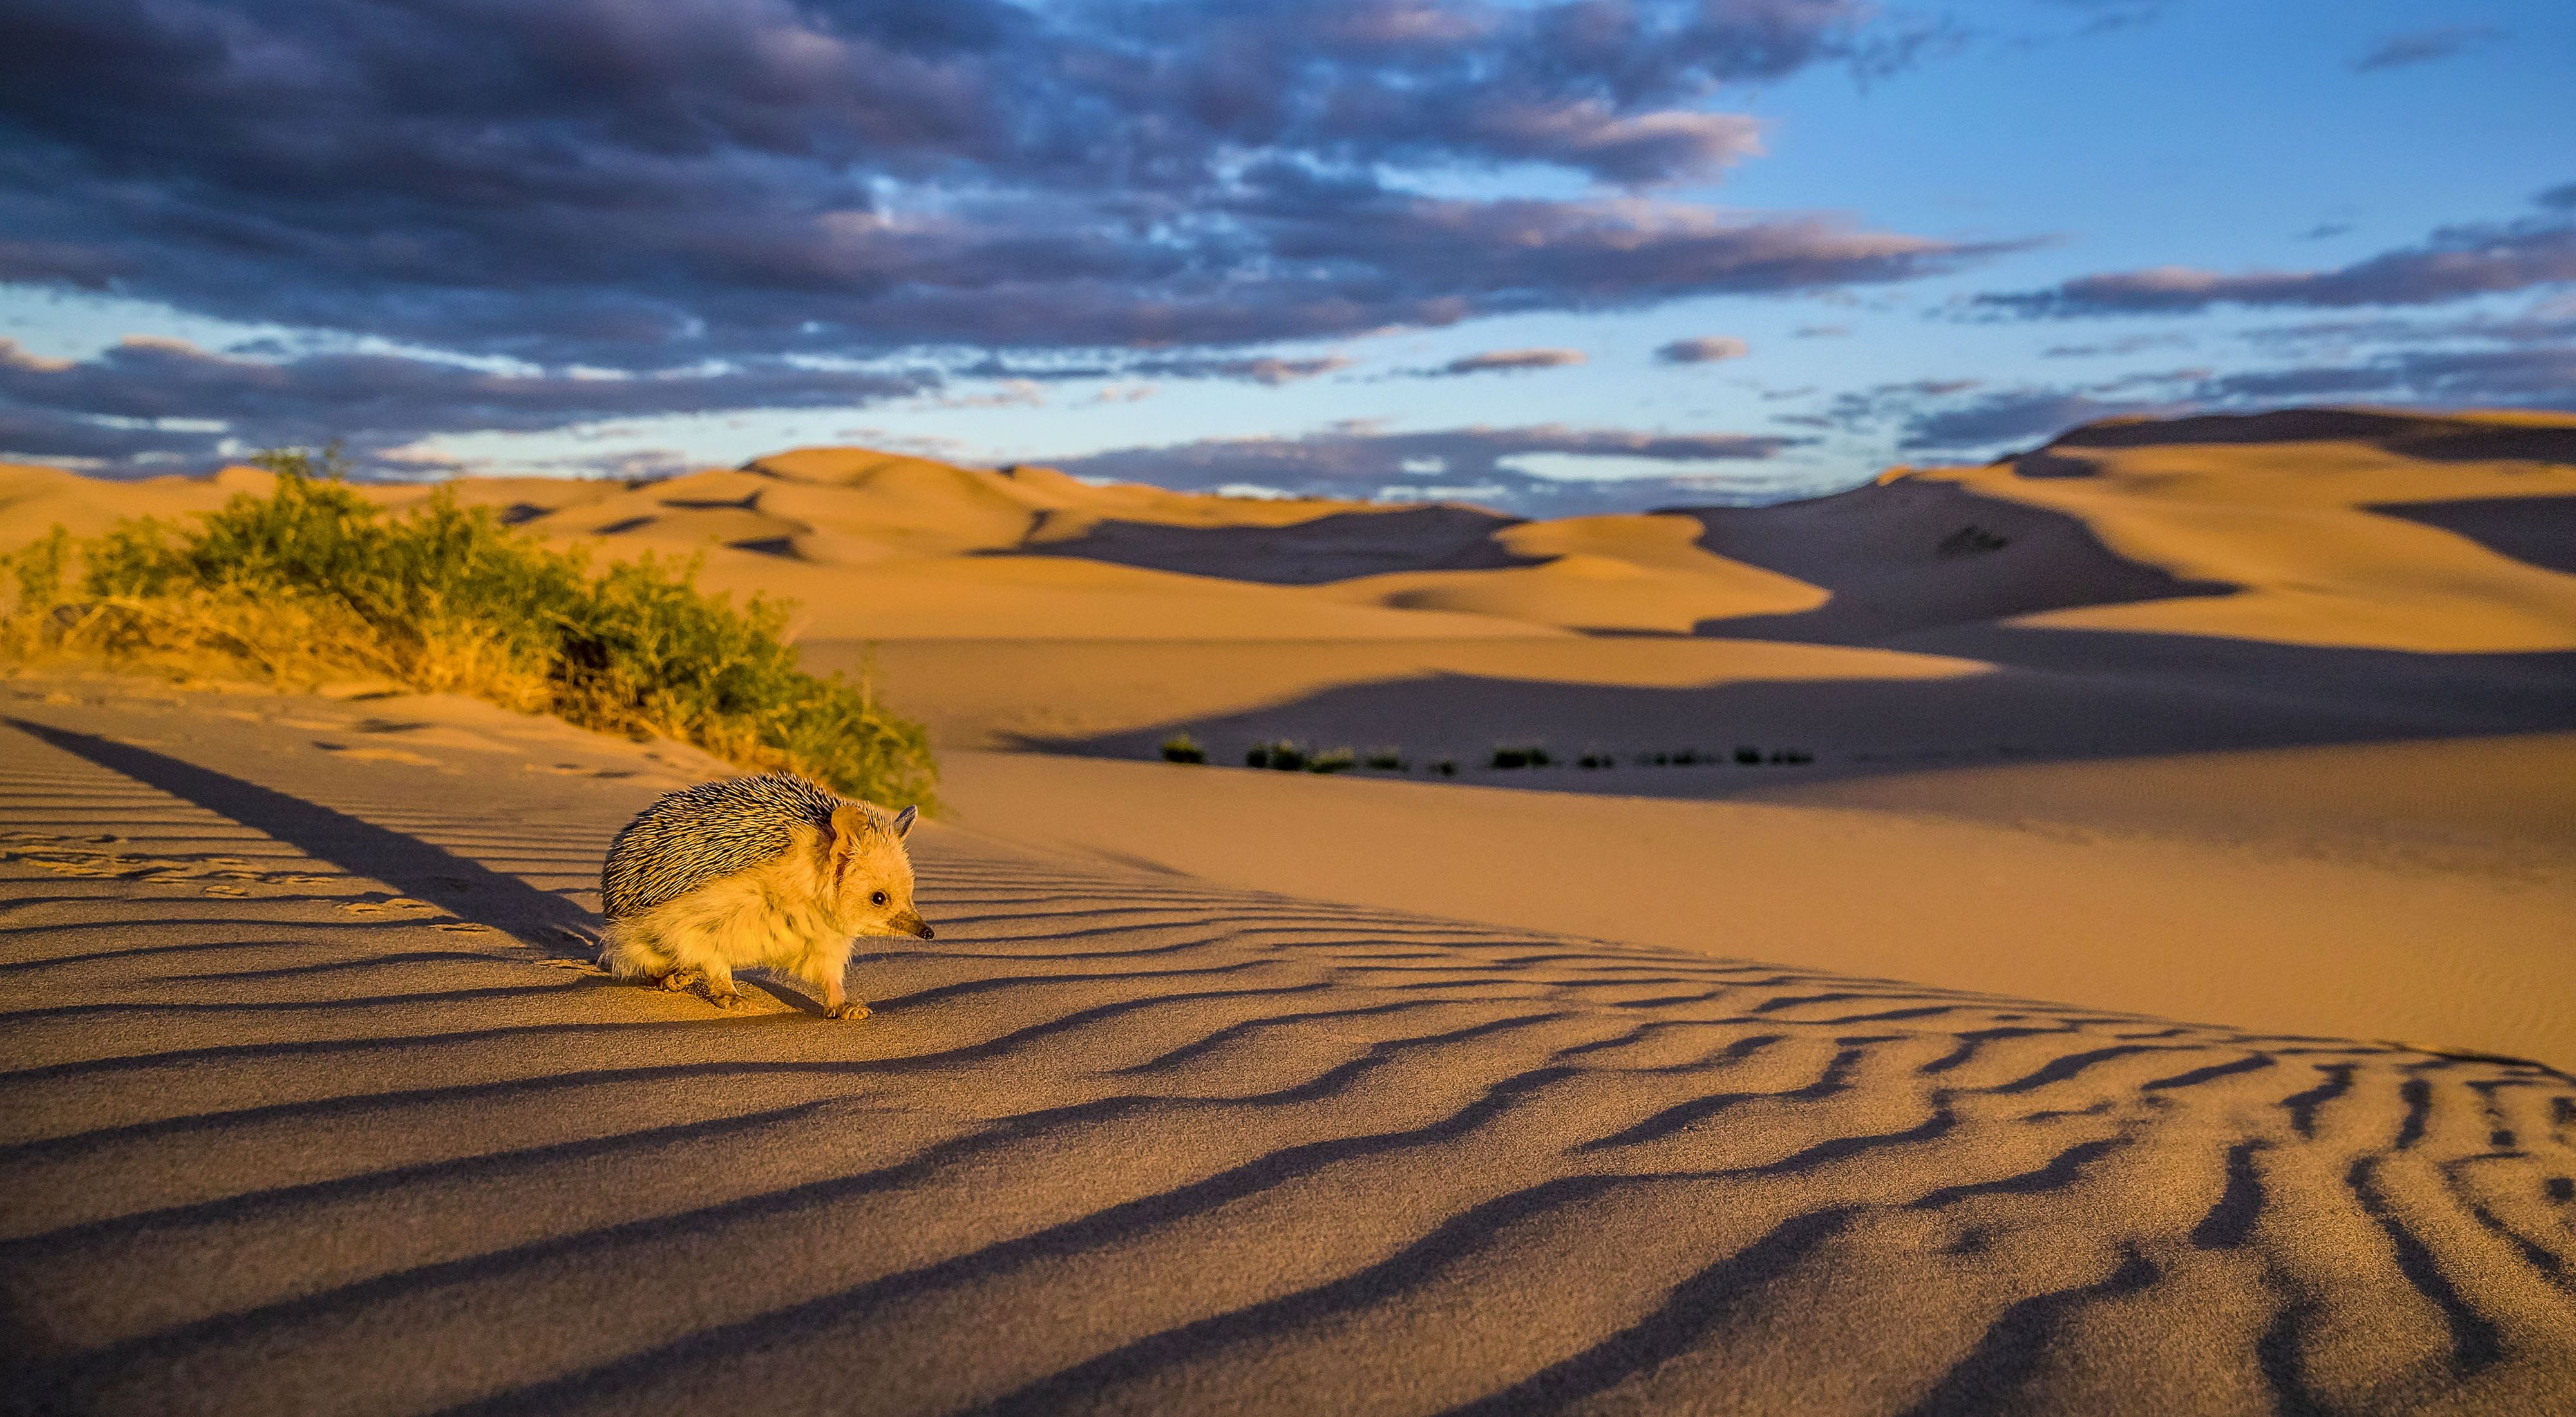 A long-eared hedgehog crosses a sand dune in the Gobi Desert